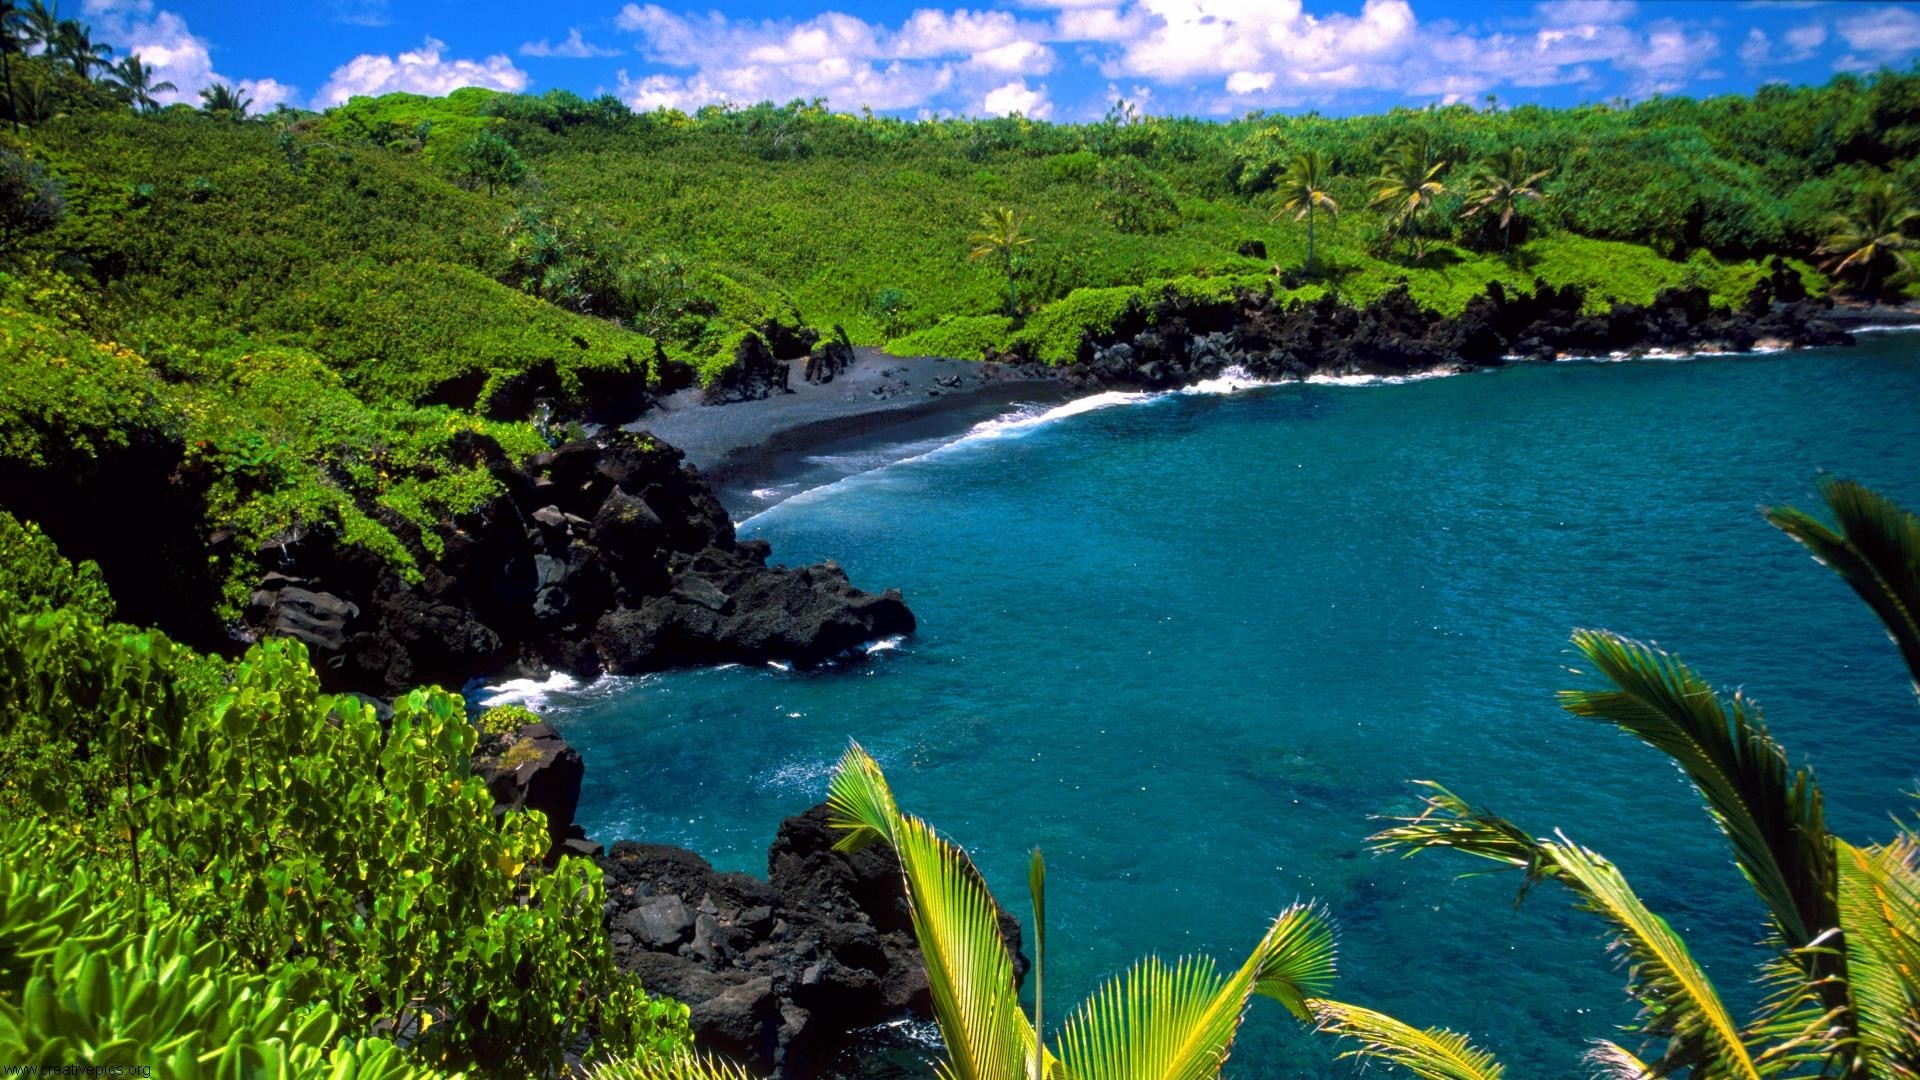 hawaii desktop wallpaper,body of water,natural landscape,nature,coast,tropics